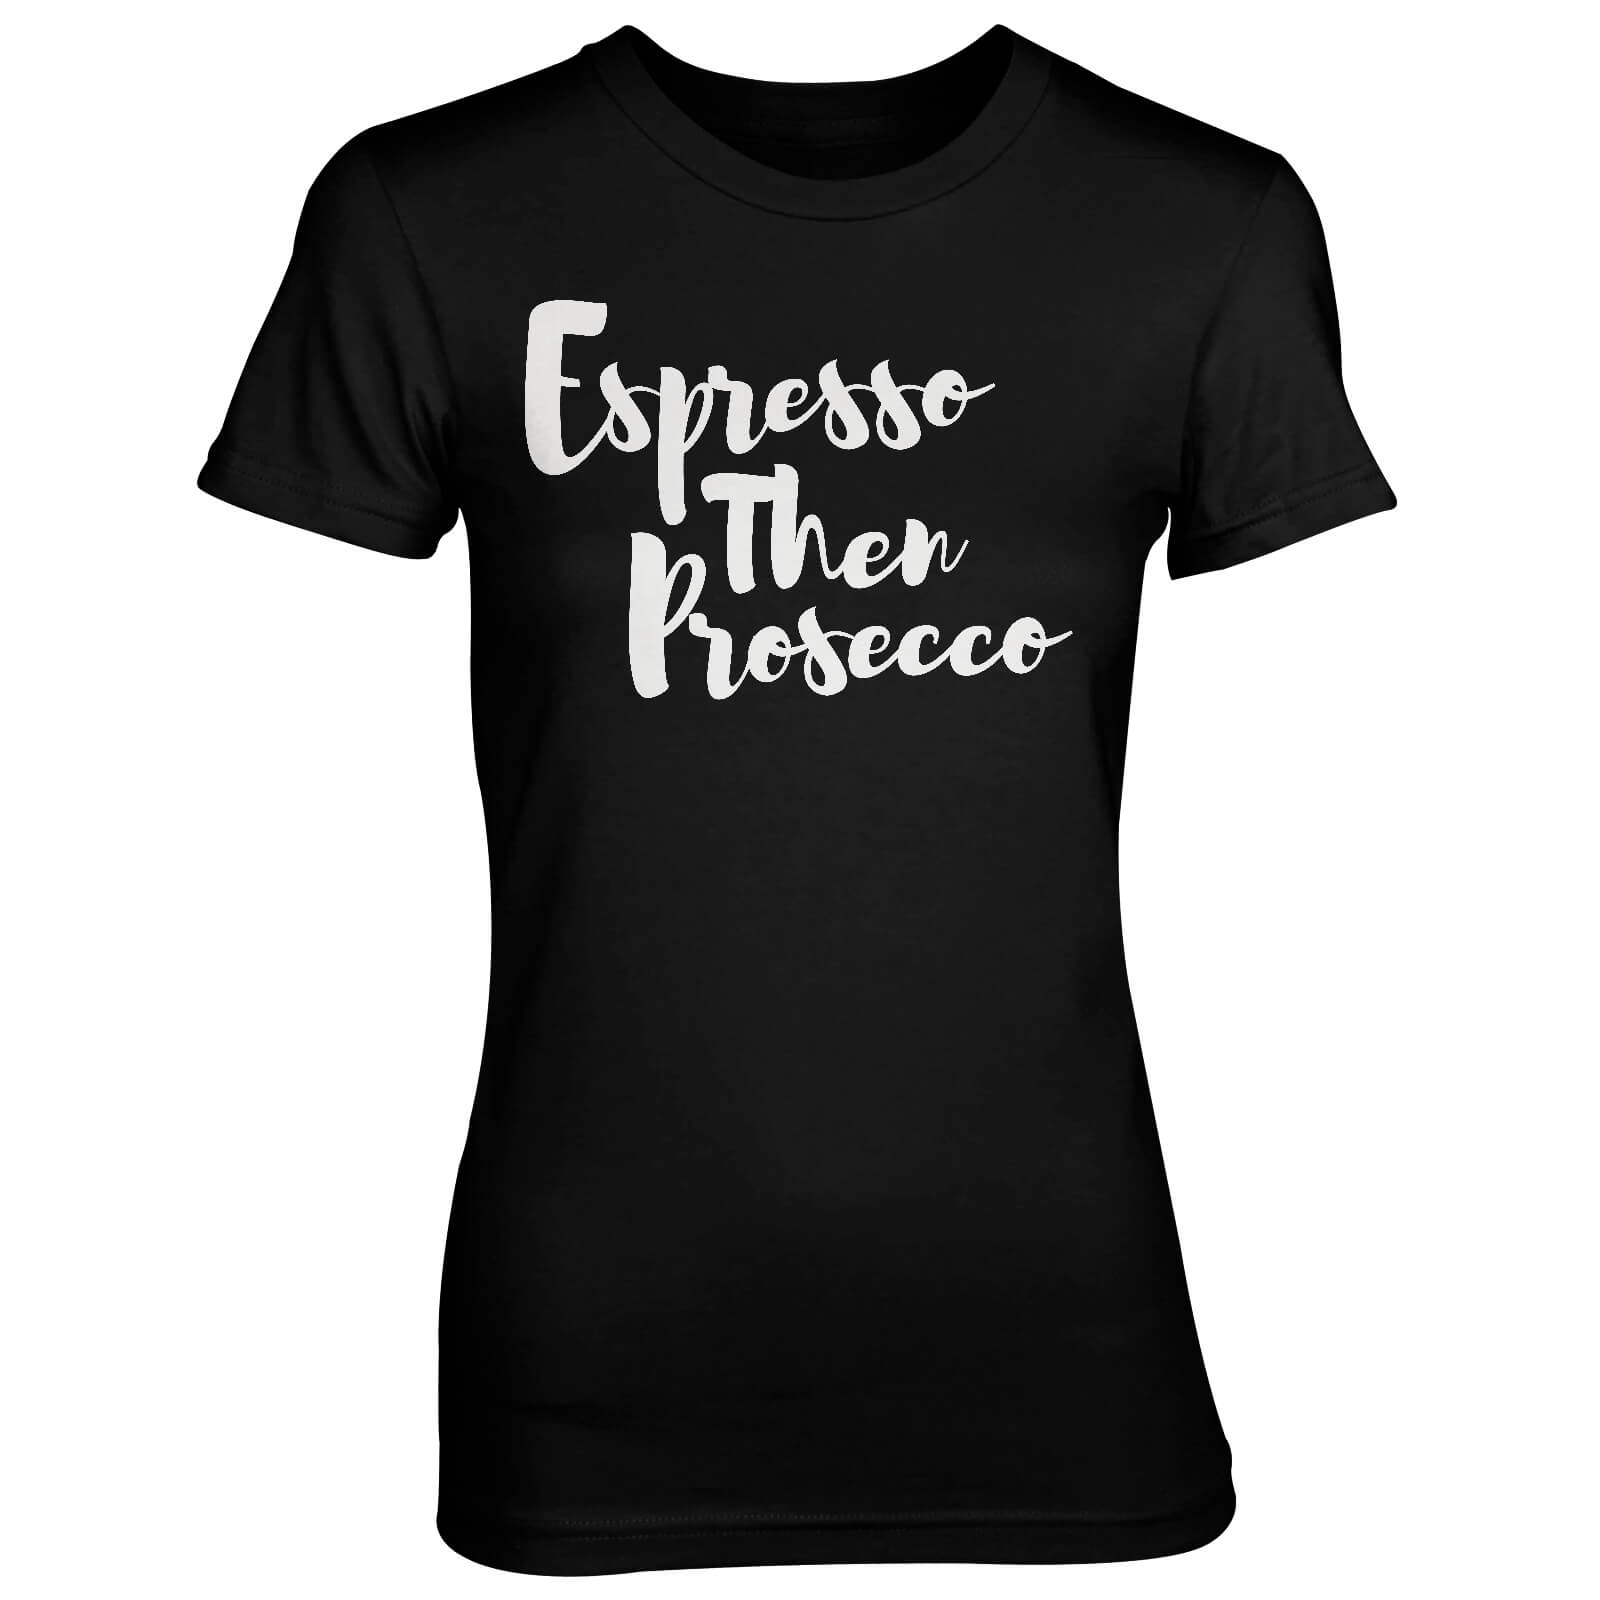 Espresso Then Prosecco Women's Black T-Shirt - S - Black